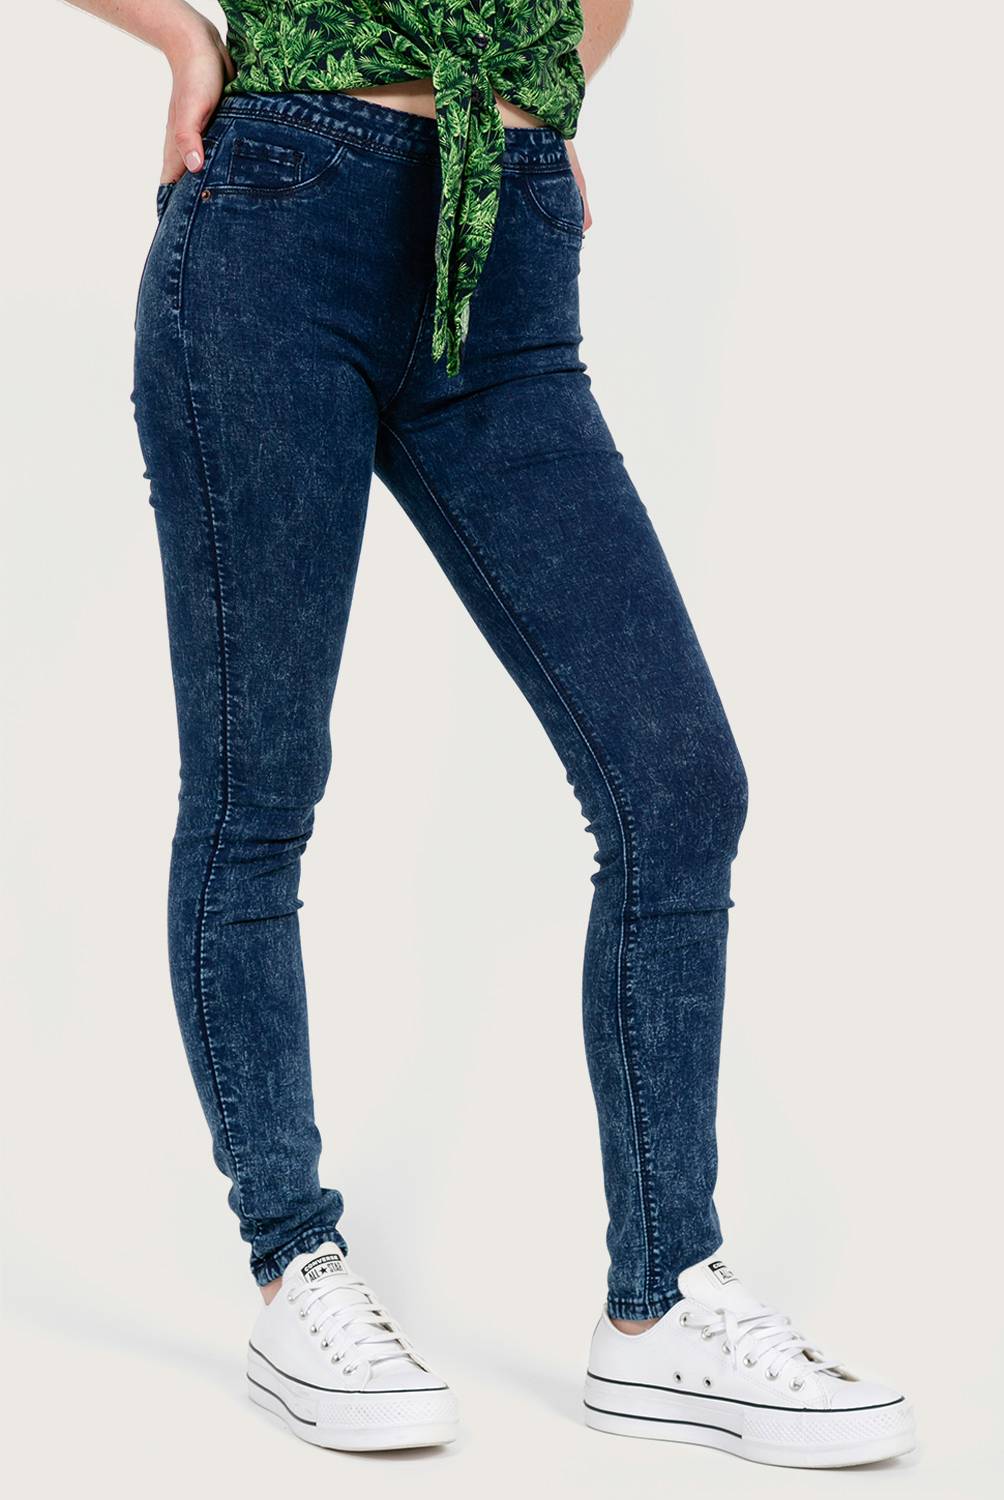 SYBILLA - Sybilla Jeans Skinny Tiro Alto Denim Mujer